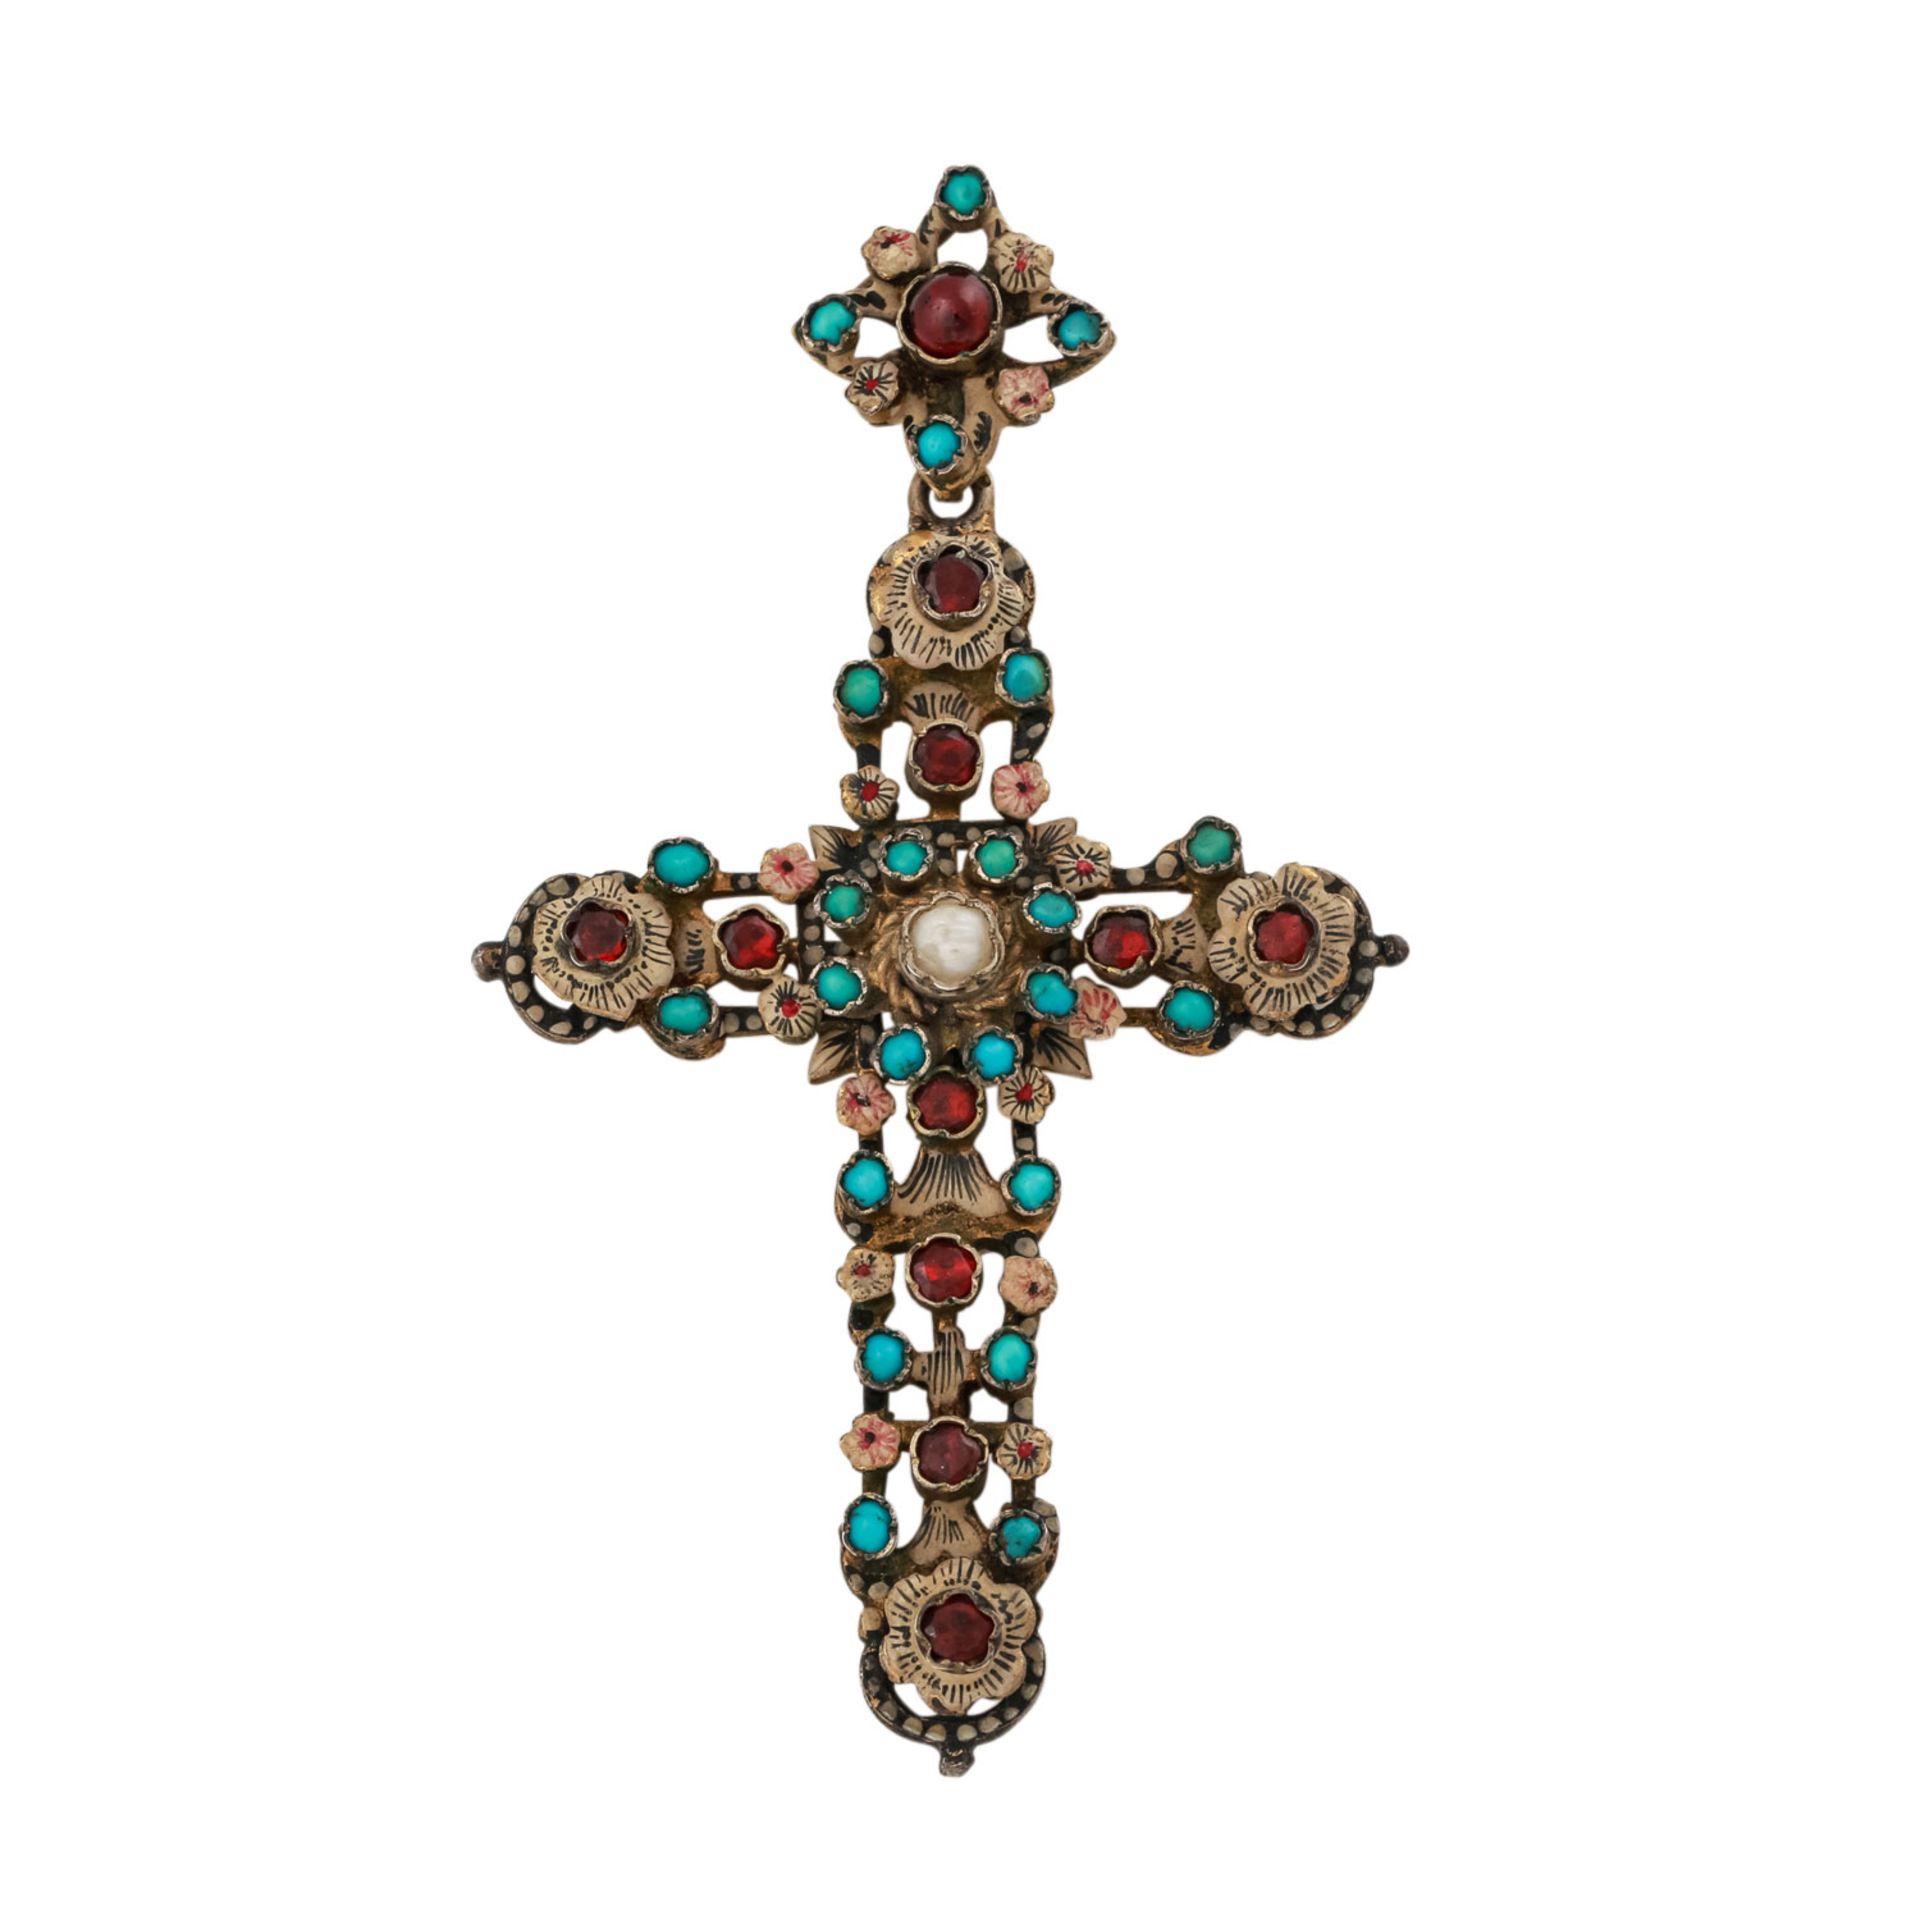 Siebenbürger Kreuz mit Edelsteinen,Granat, Türkis, Silber vergoldet, tlw. emailliert, L: ca. 7,8 cm,